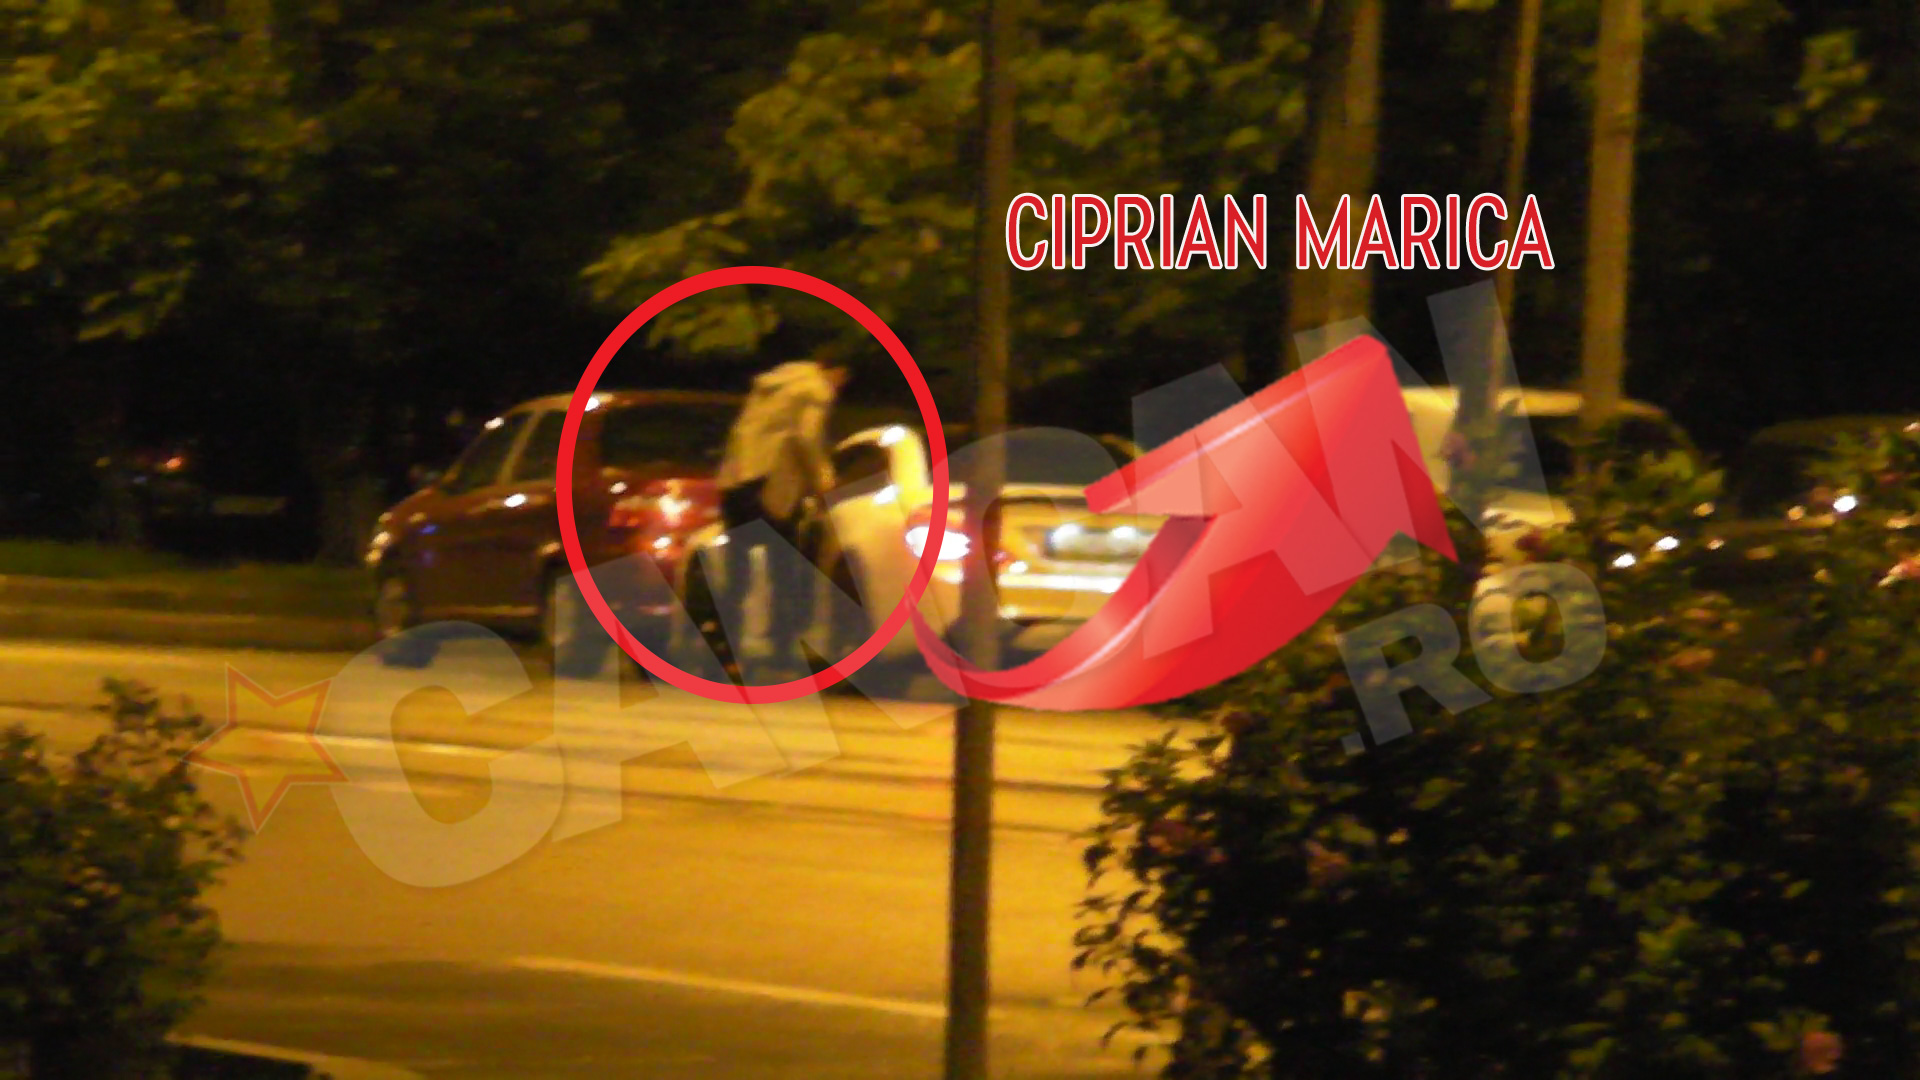 In jurul orei 0:30, CIprian Marica coboara in fata blocului in care locuieste Ilinca Vandici